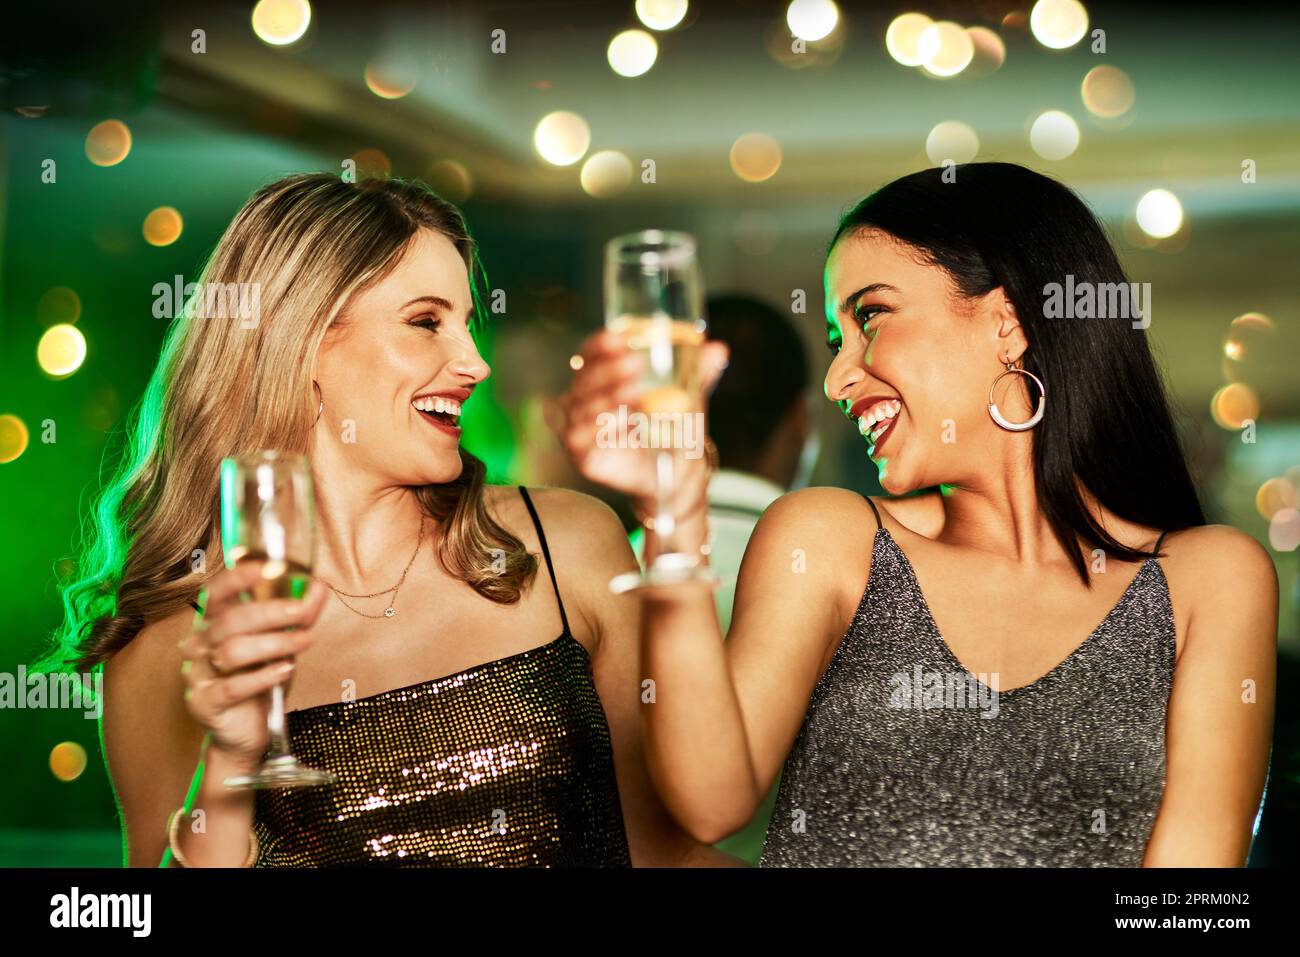 Sie wissen, wie man Spaß hat. Zwei fröhliche junge Frauen, die abends auf der Tanzfläche eines Clubs tanzen und einen Drink trinken Stockfoto